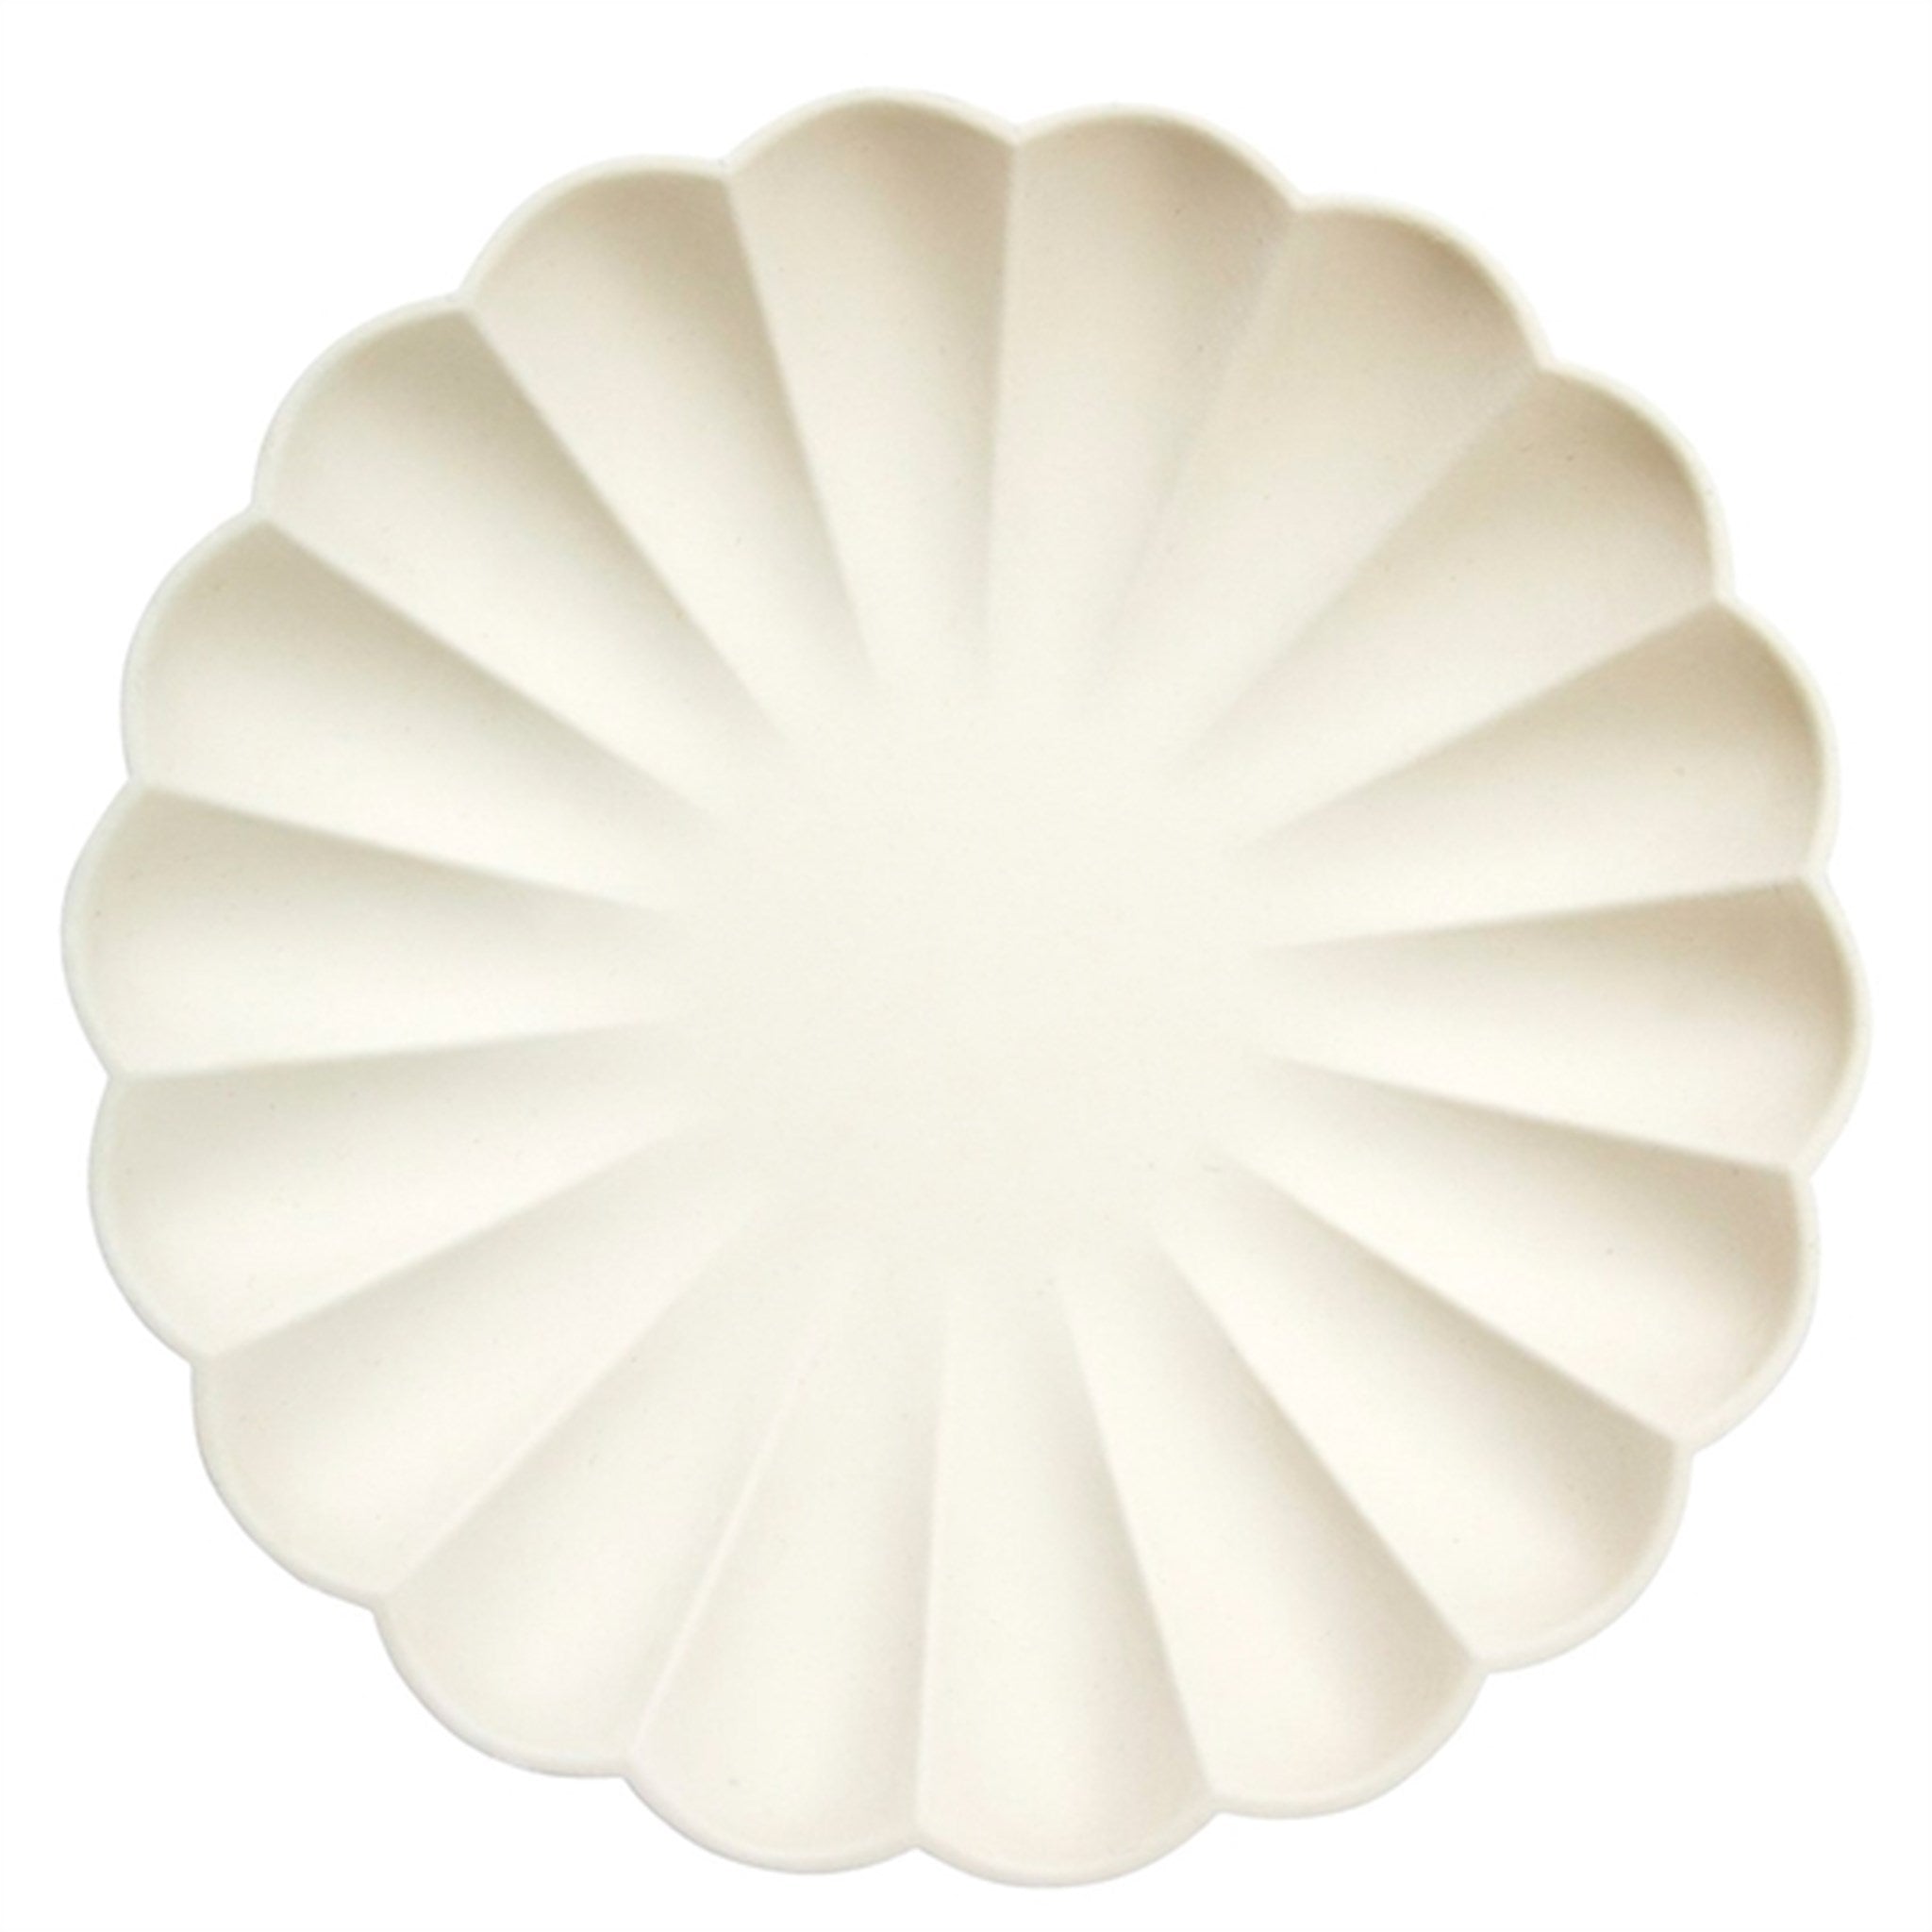 Meri Meri Simply Eco Cream Plates Large